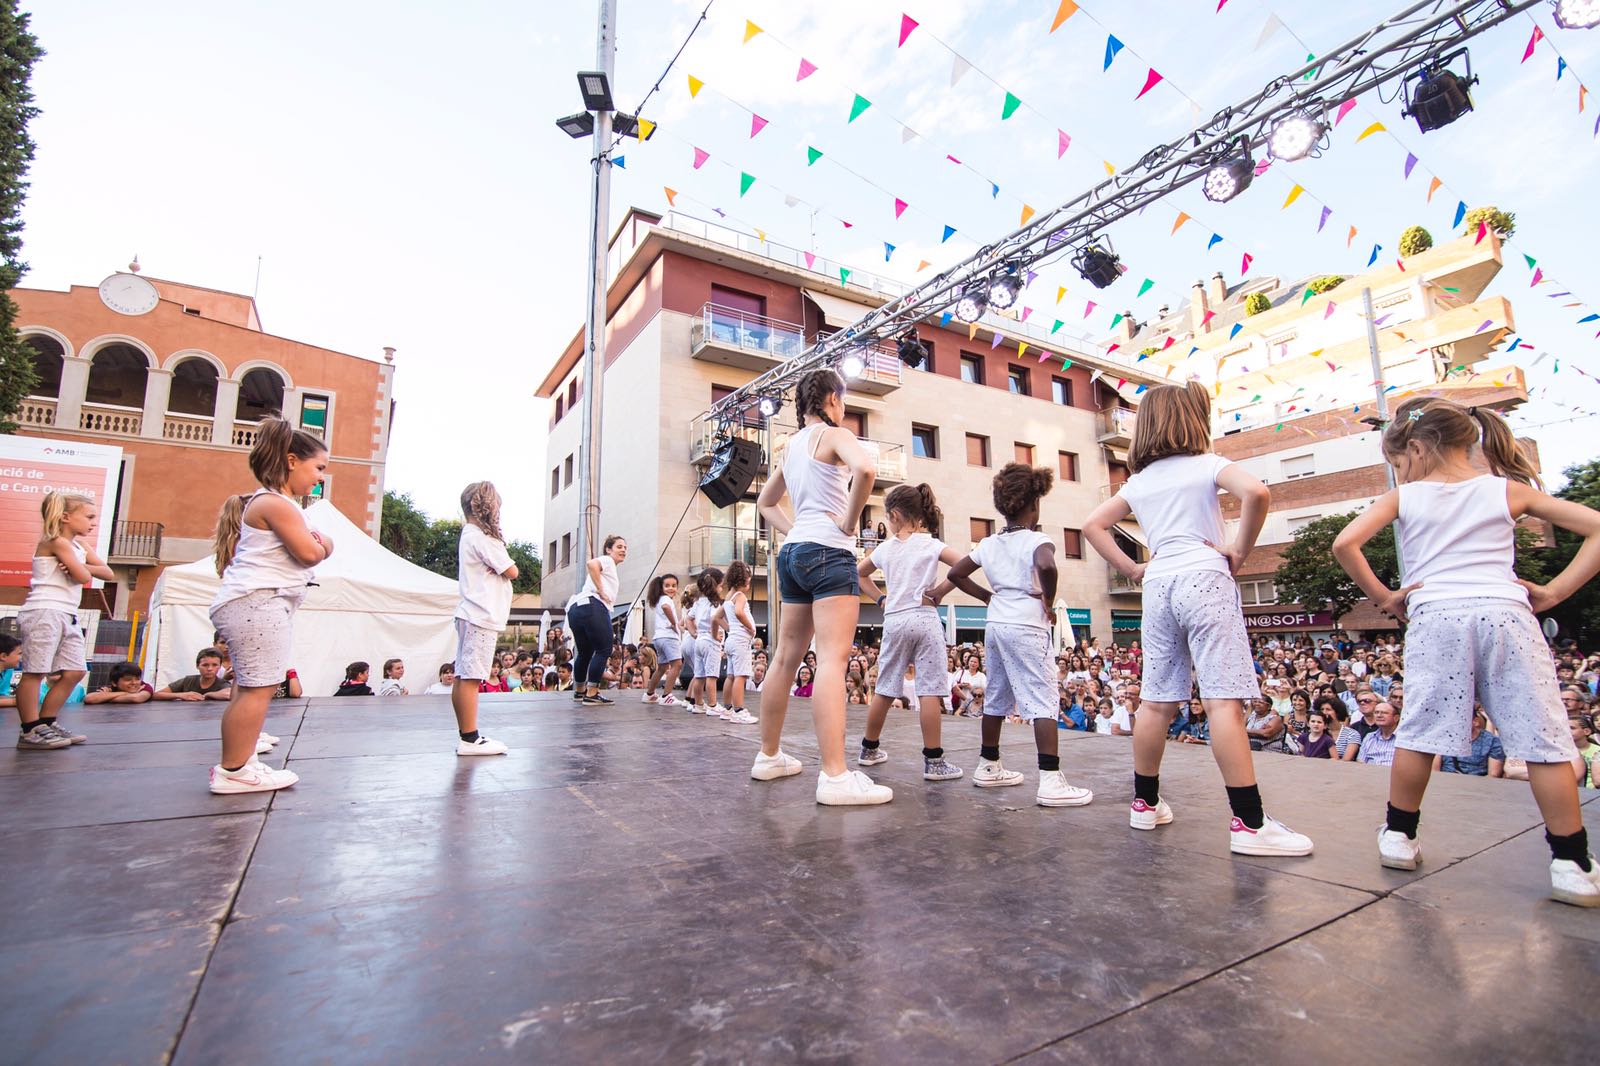 L'Escola Sant Cugat, un fix de Festa Major de Sant Cugat. Foto: David Quintana